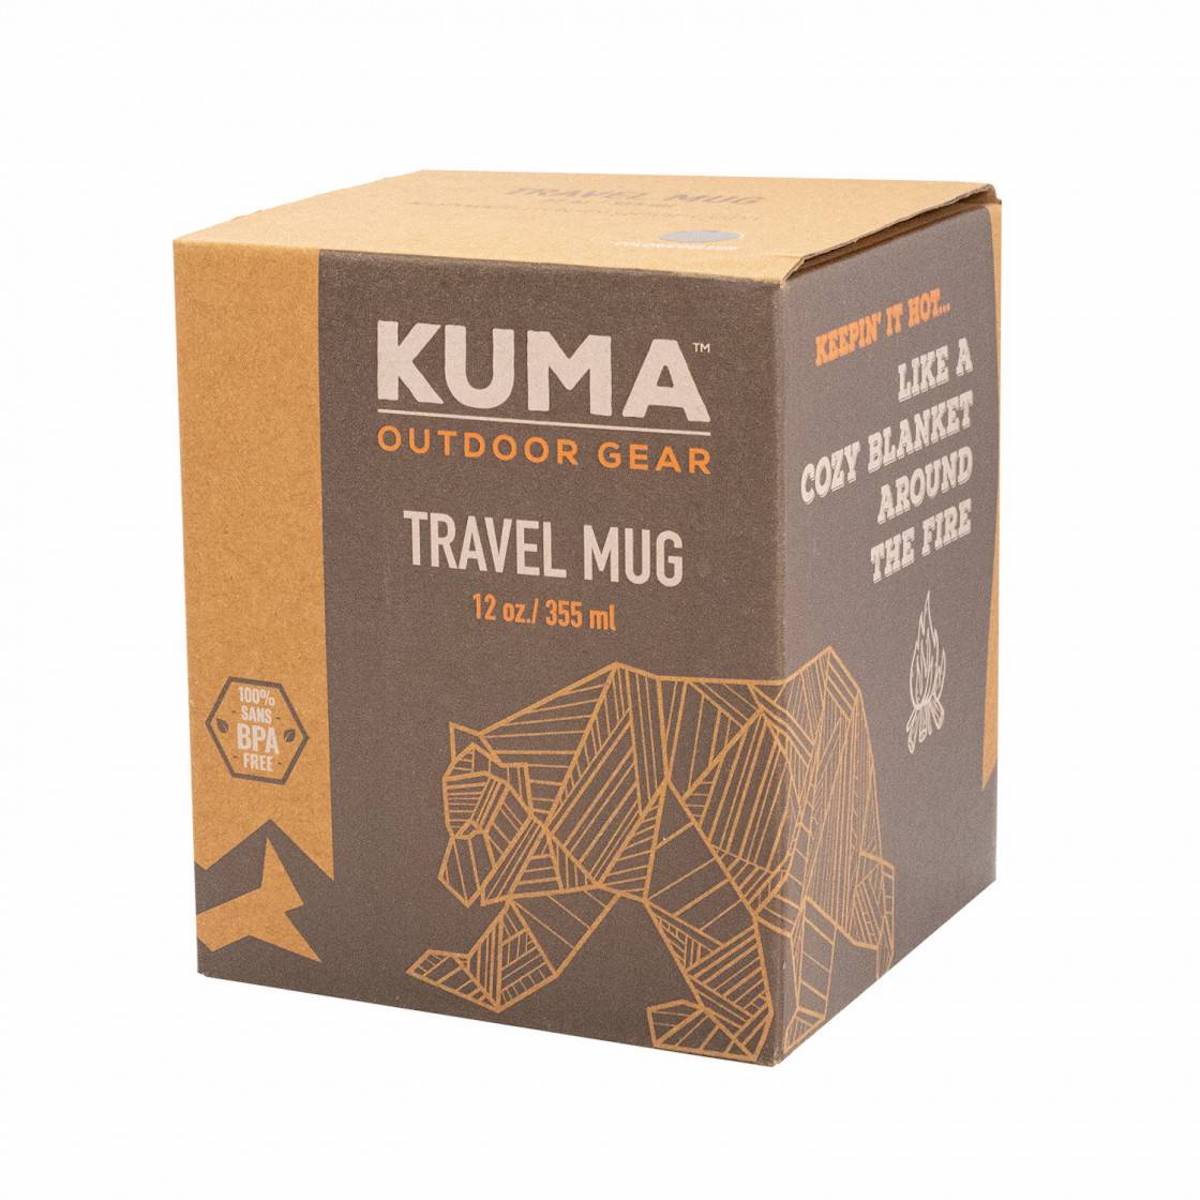 Kuma Travel Mug - Black